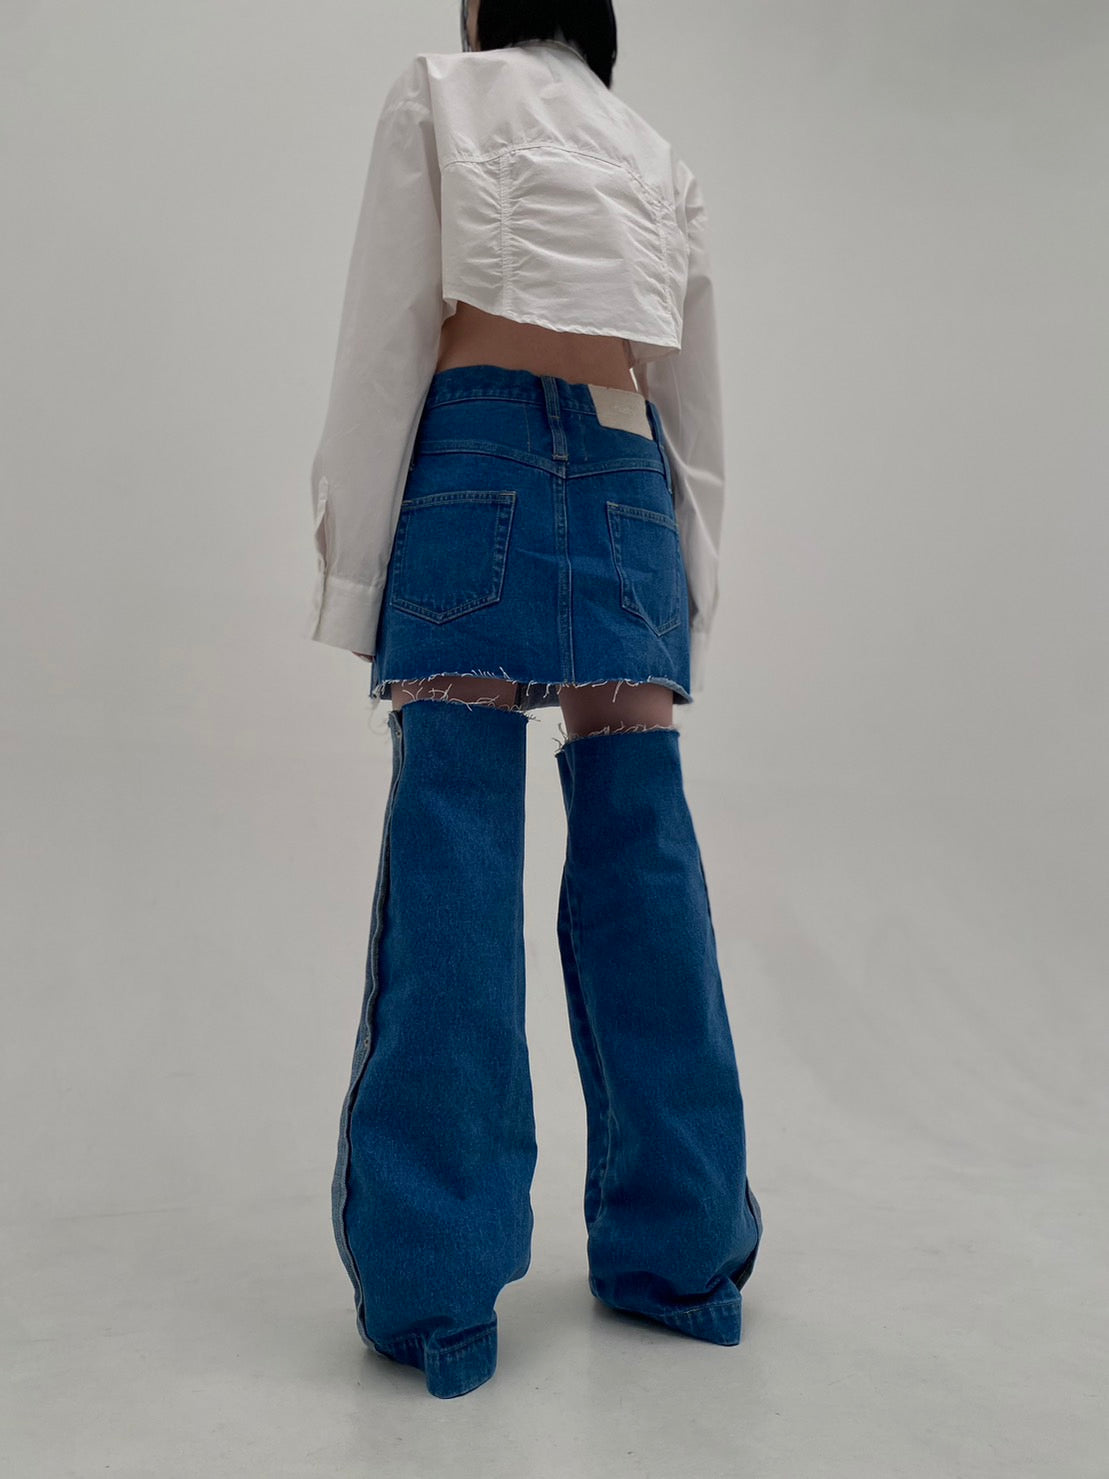 Denim Skirt With Legcover(Blue) – neith.onlinestore